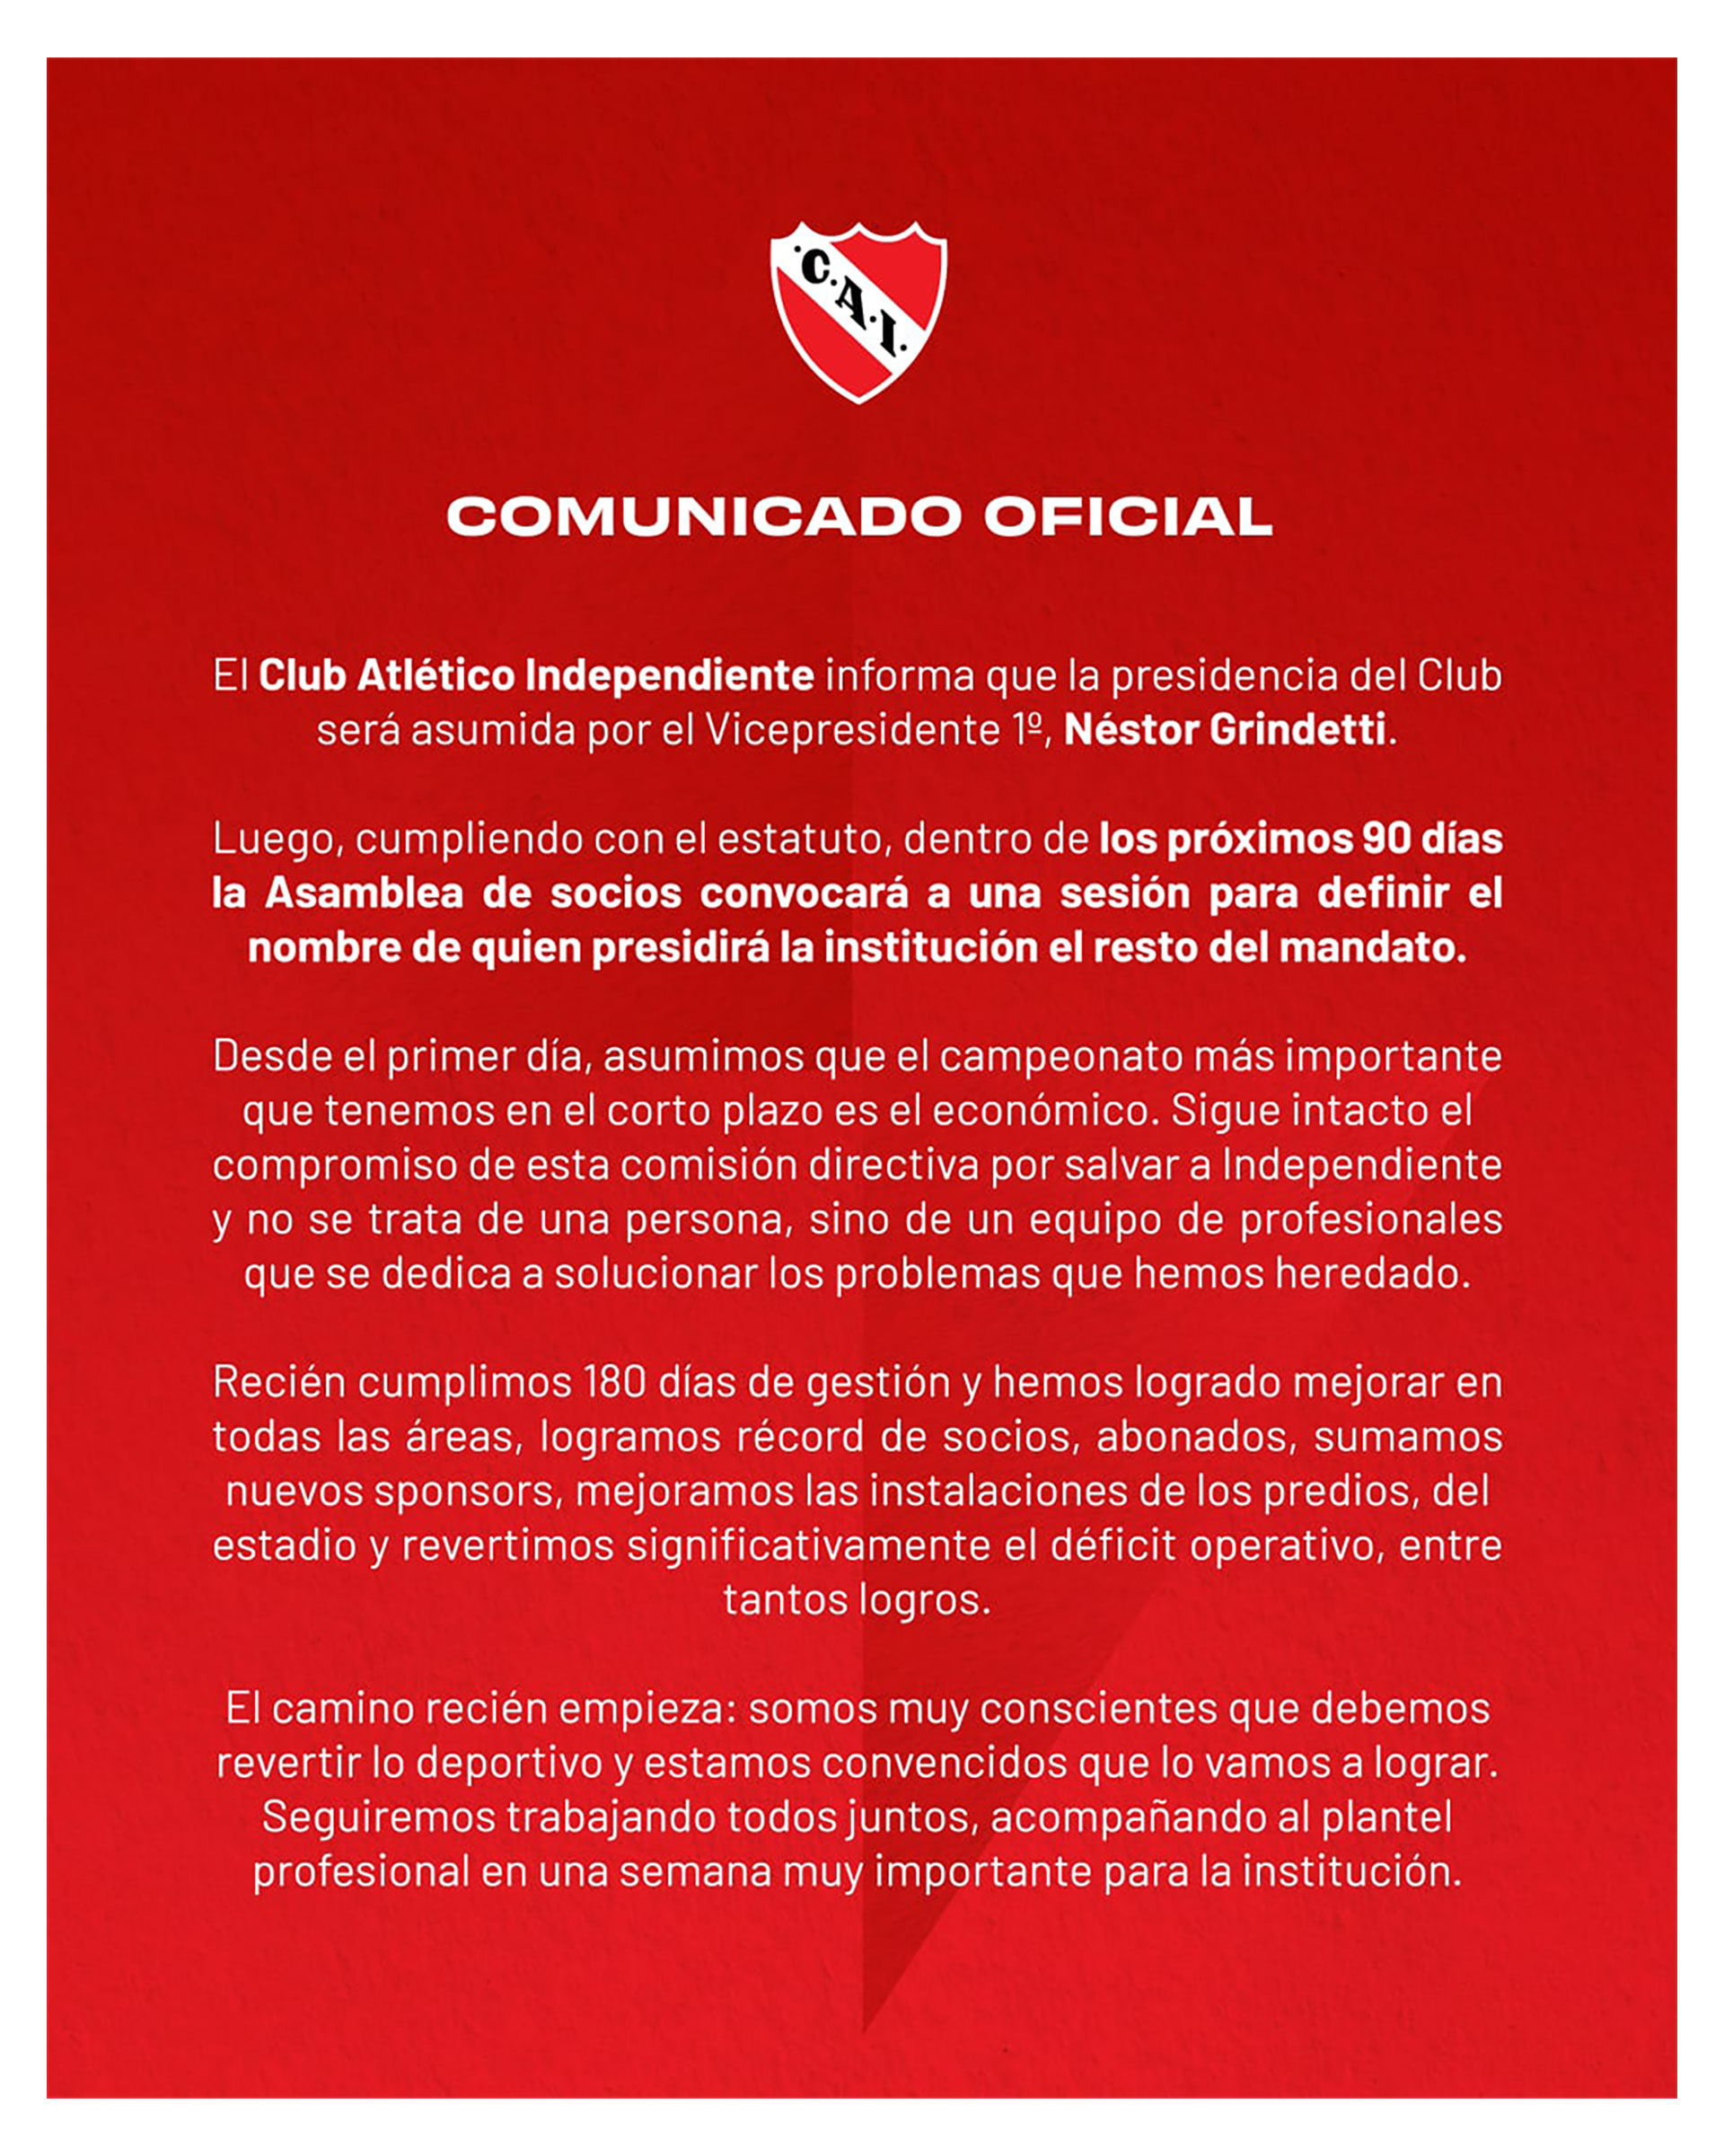 El comunicado con el que Independiente informó que Néstor Grindetti asumirá la presidencia del club tras la renuncia de Fabián Doman